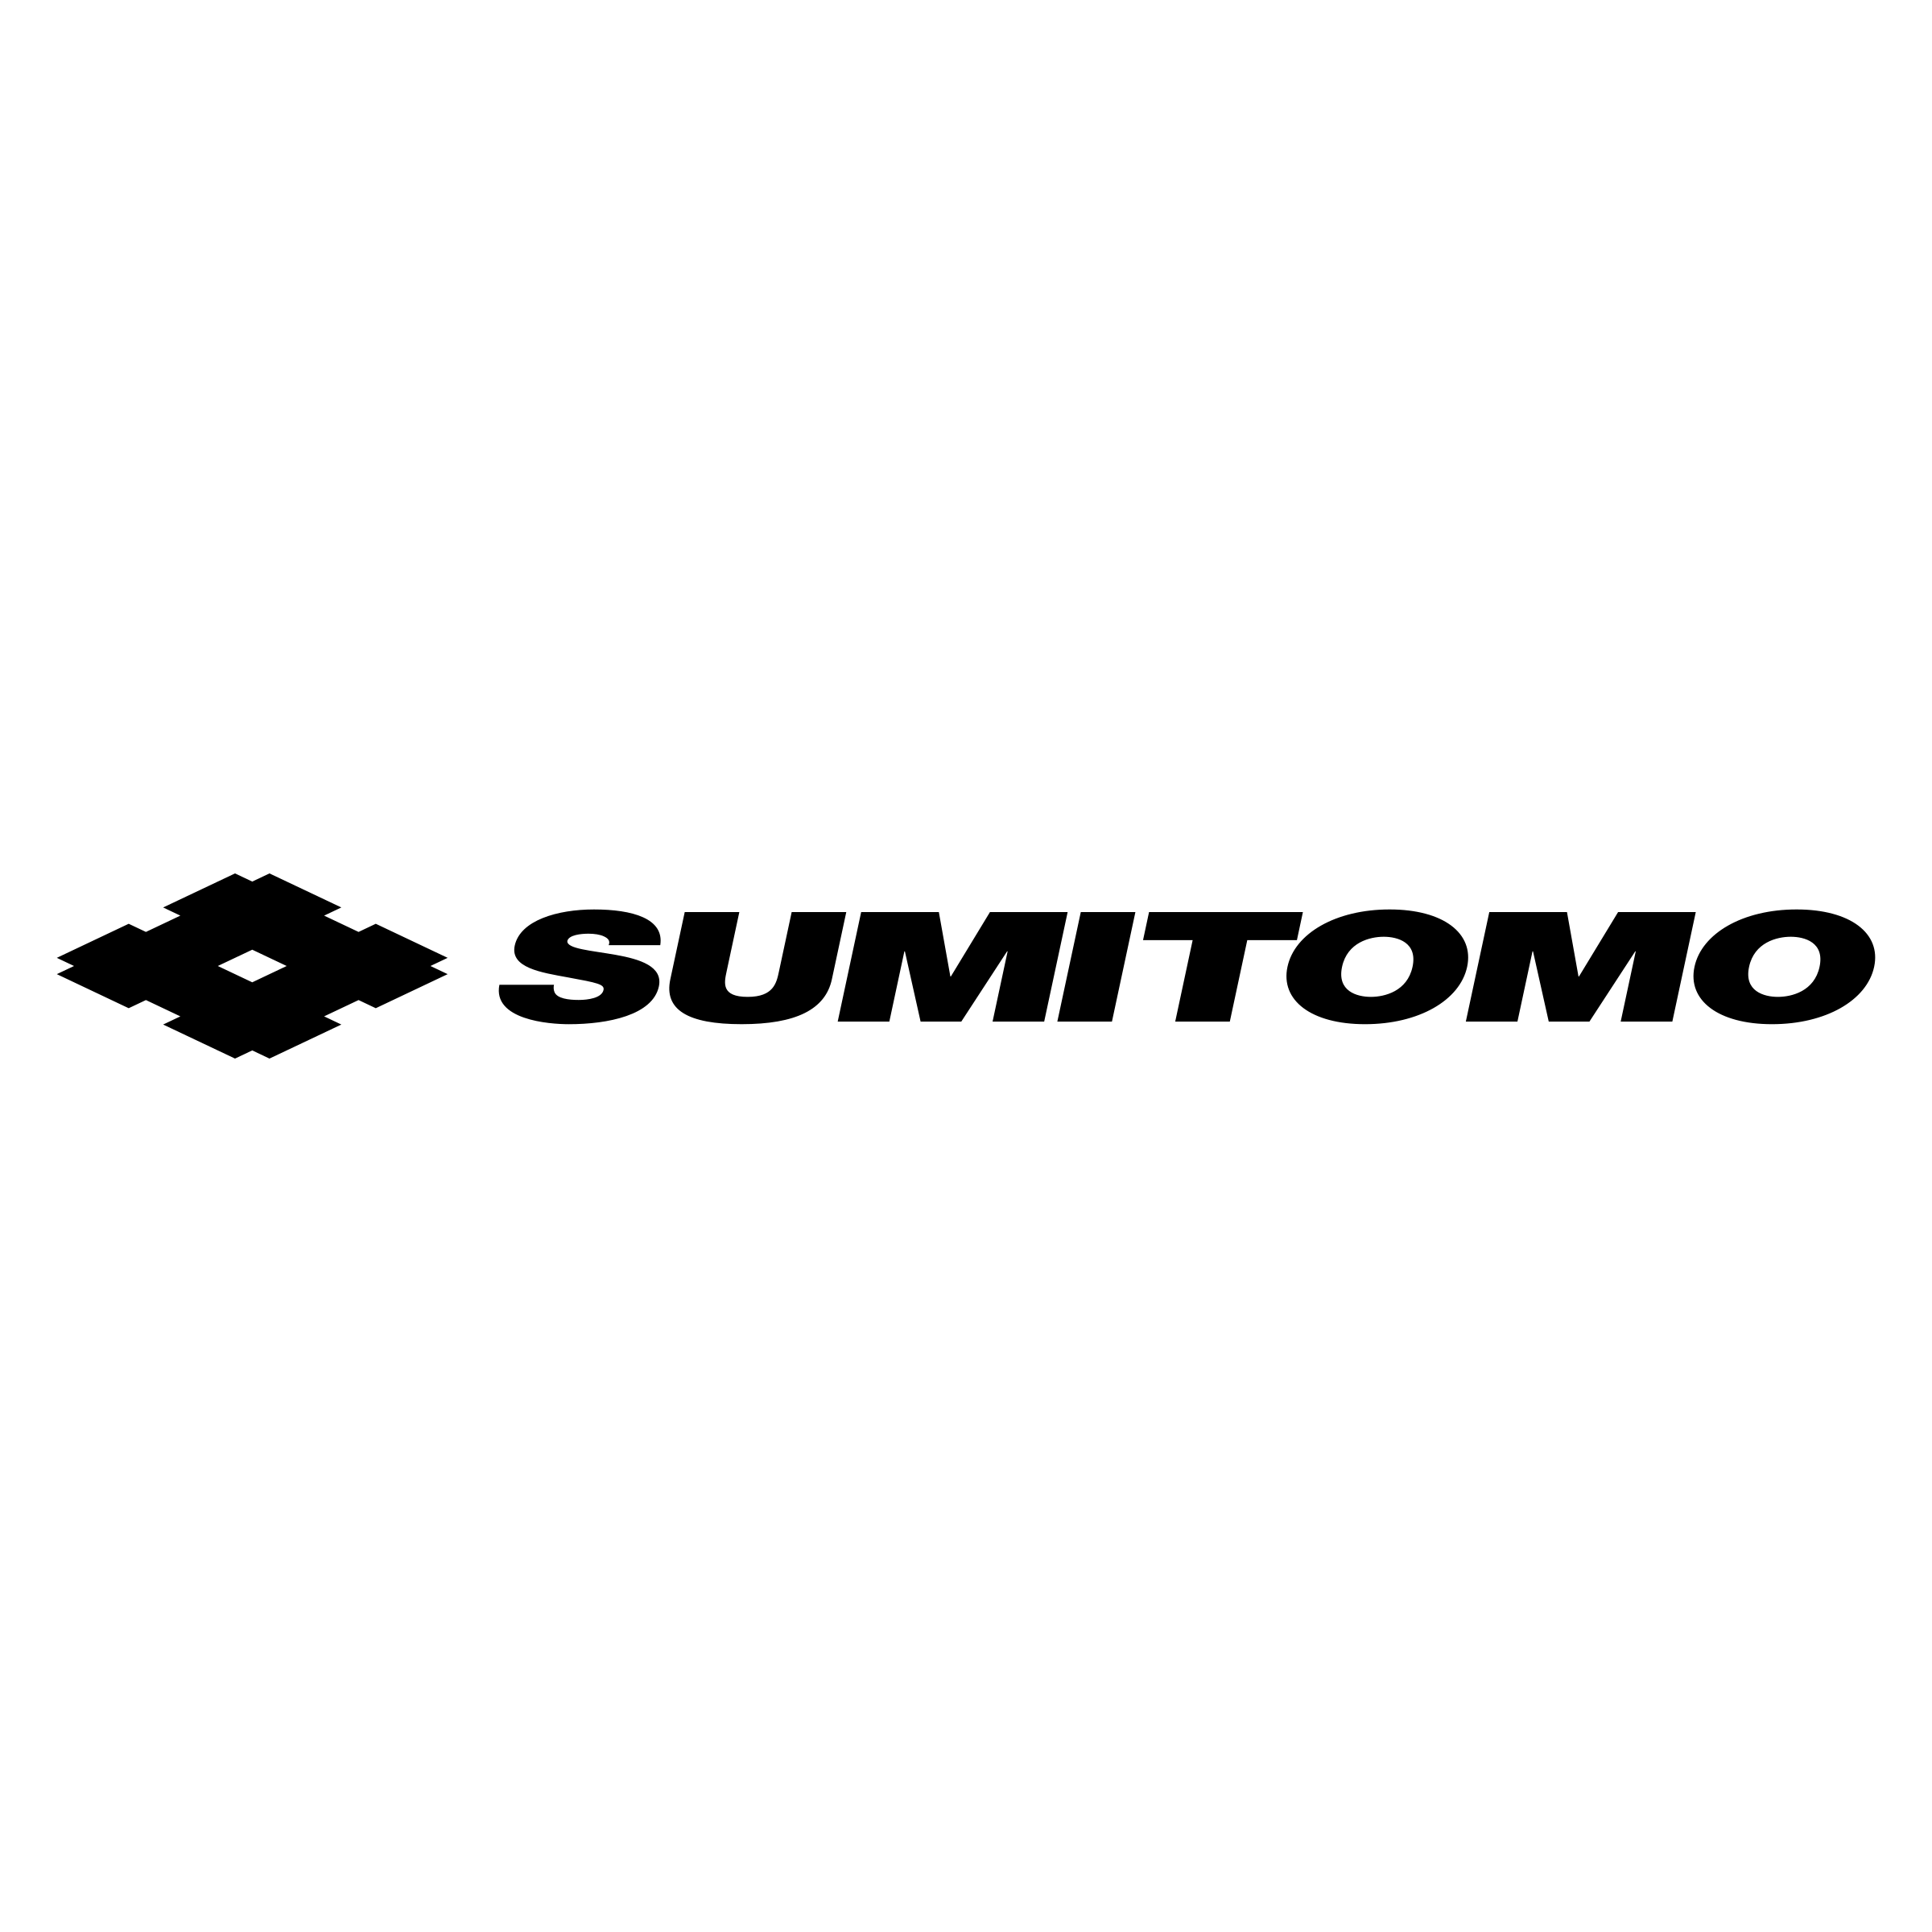 Sumitomo Logo - Sumitomo Logo PNG Transparent & SVG Vector - Freebie Supply